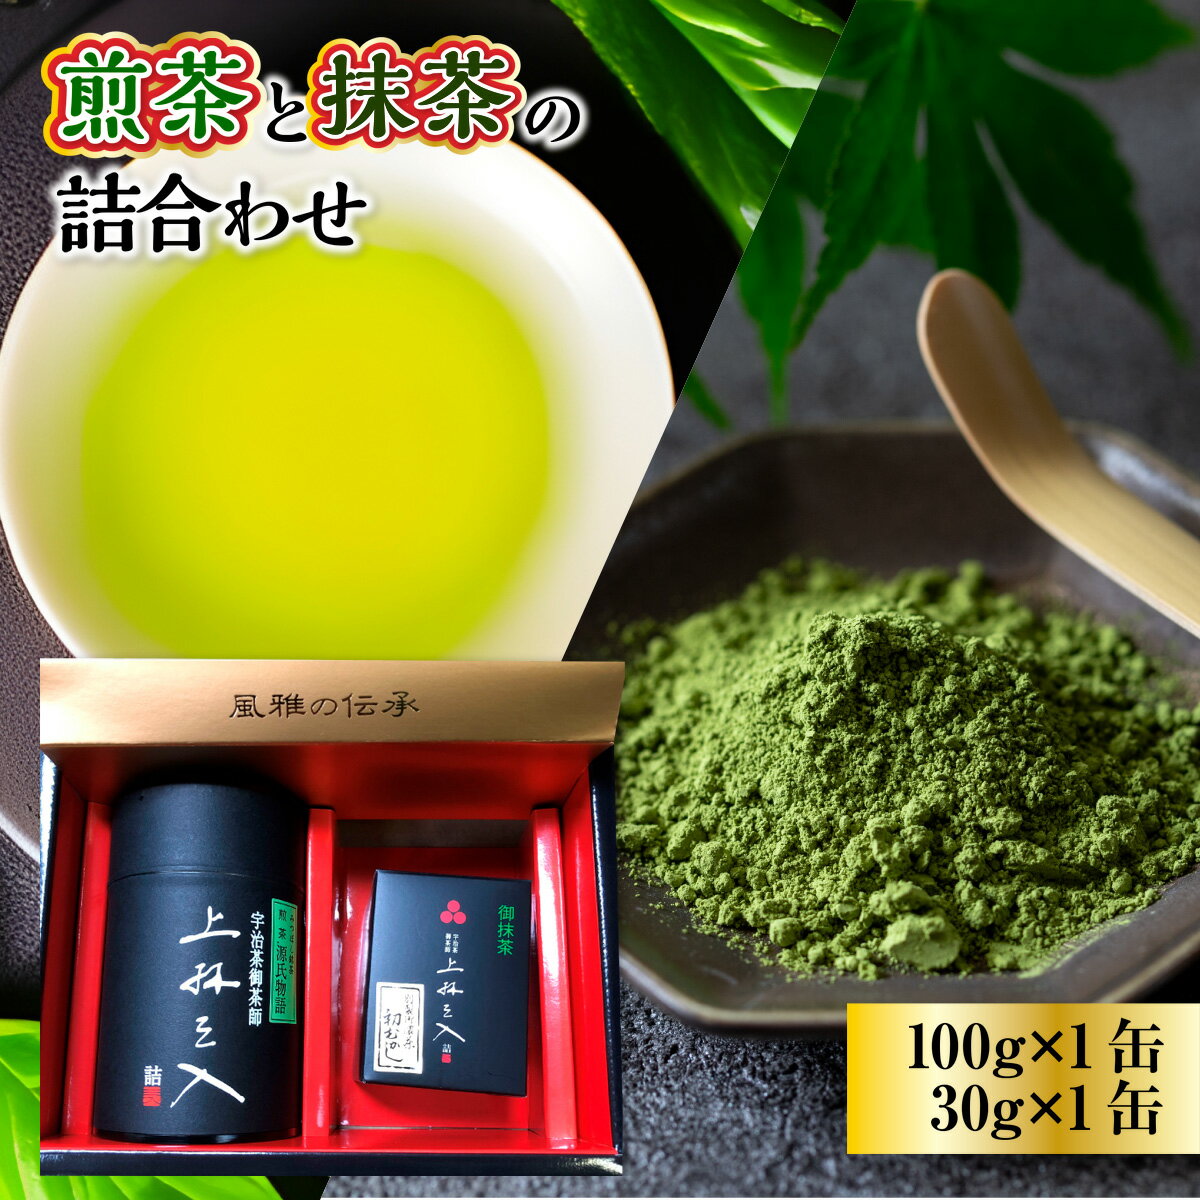 【ふるさと納税】煎茶と抹茶の詰合わせ 100g×1缶 30g